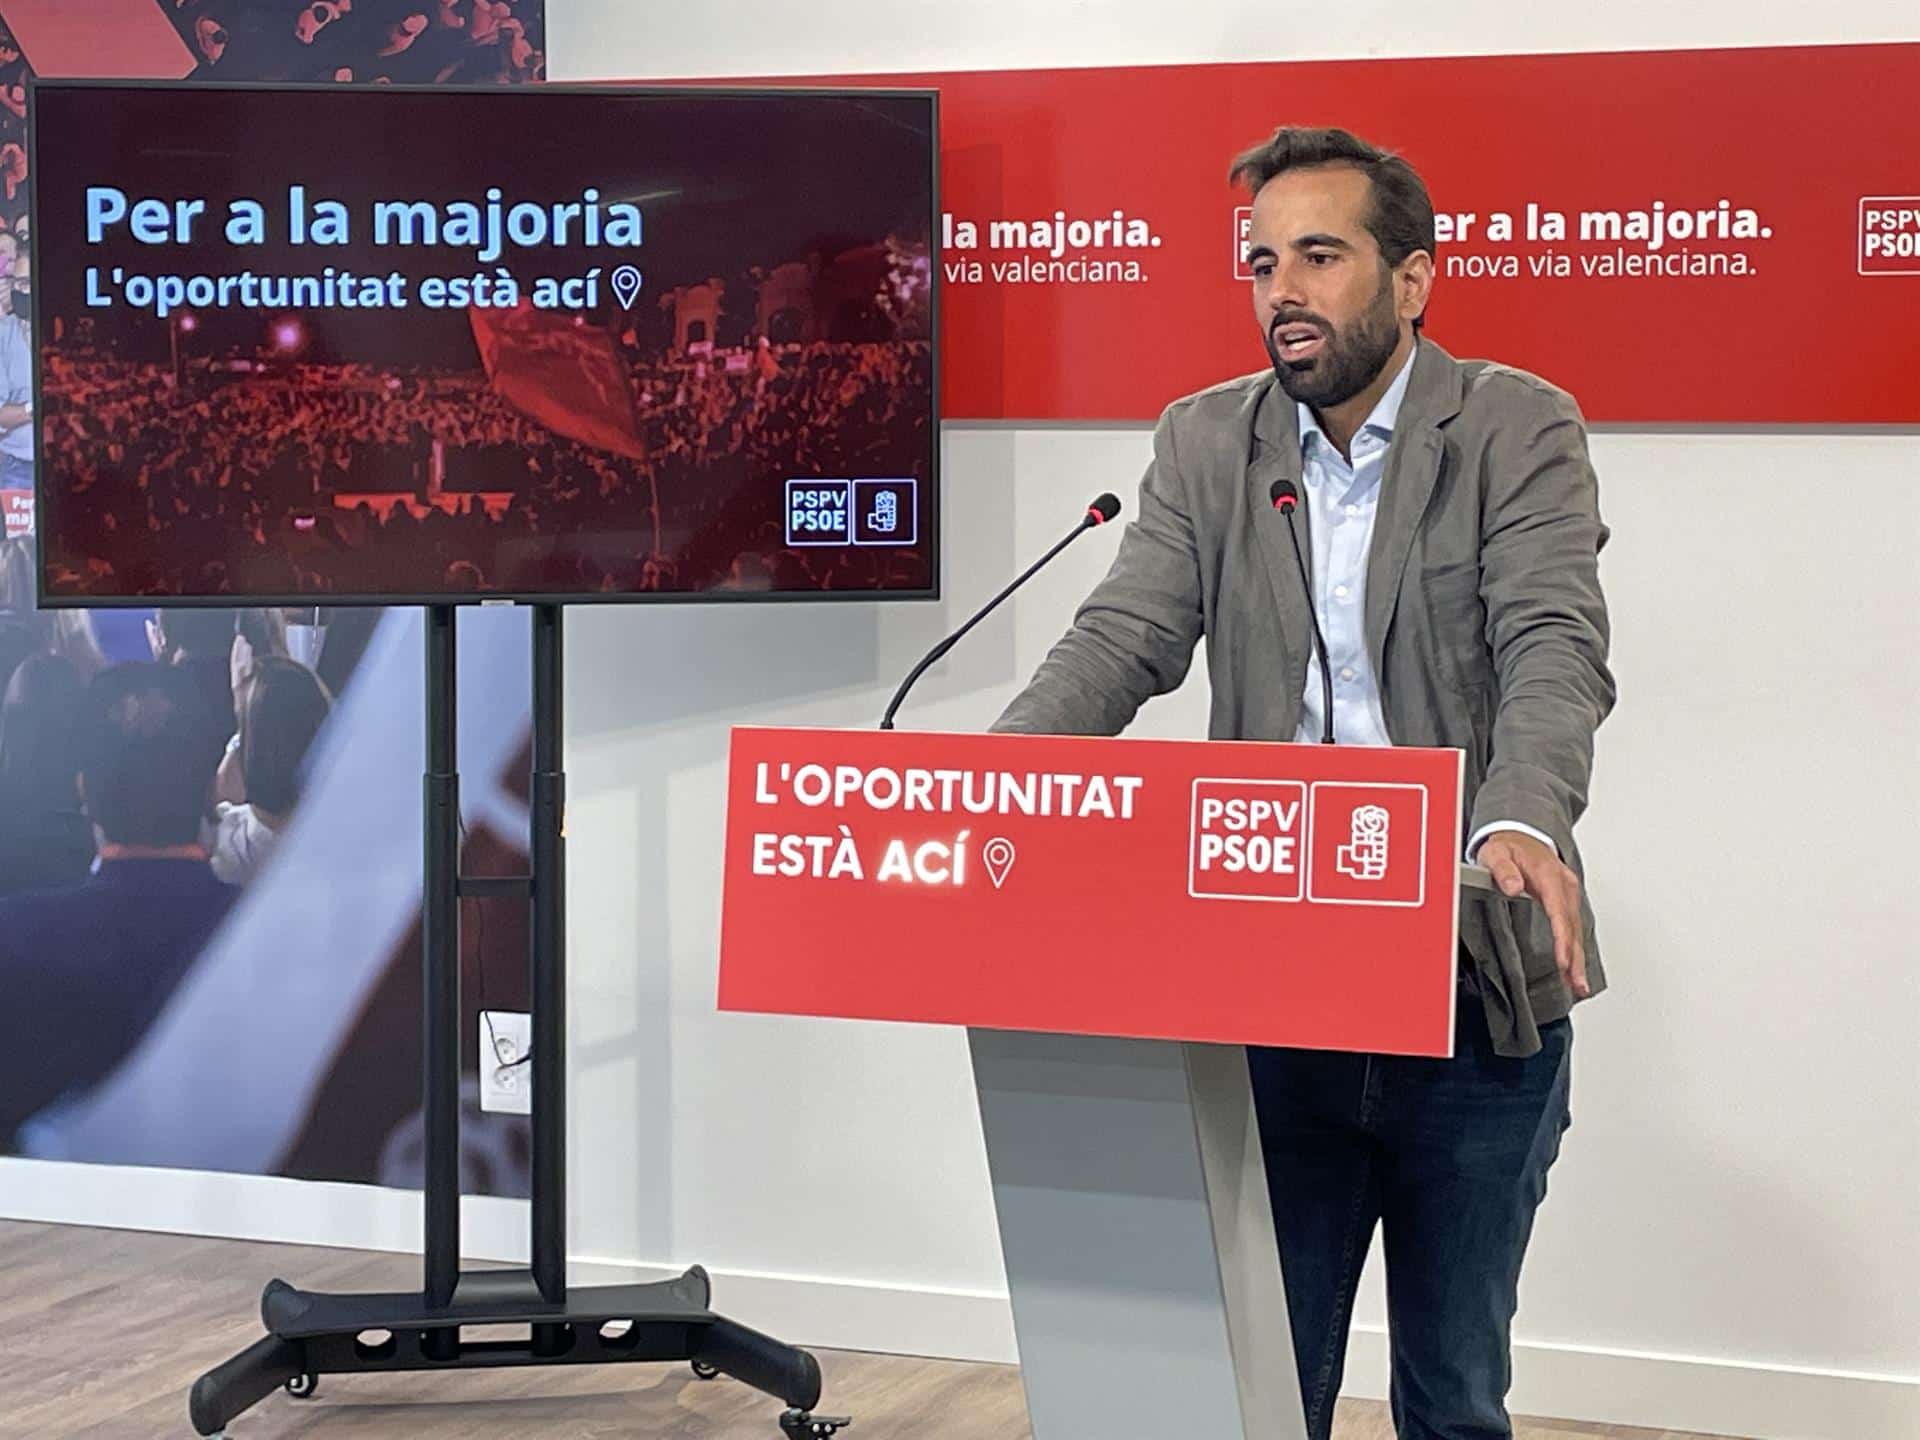 El PSPV reprocha al PP que “se empeñe en hablar mal” de la Comunitat Valenciana cuando es “ejemplo de gestión”